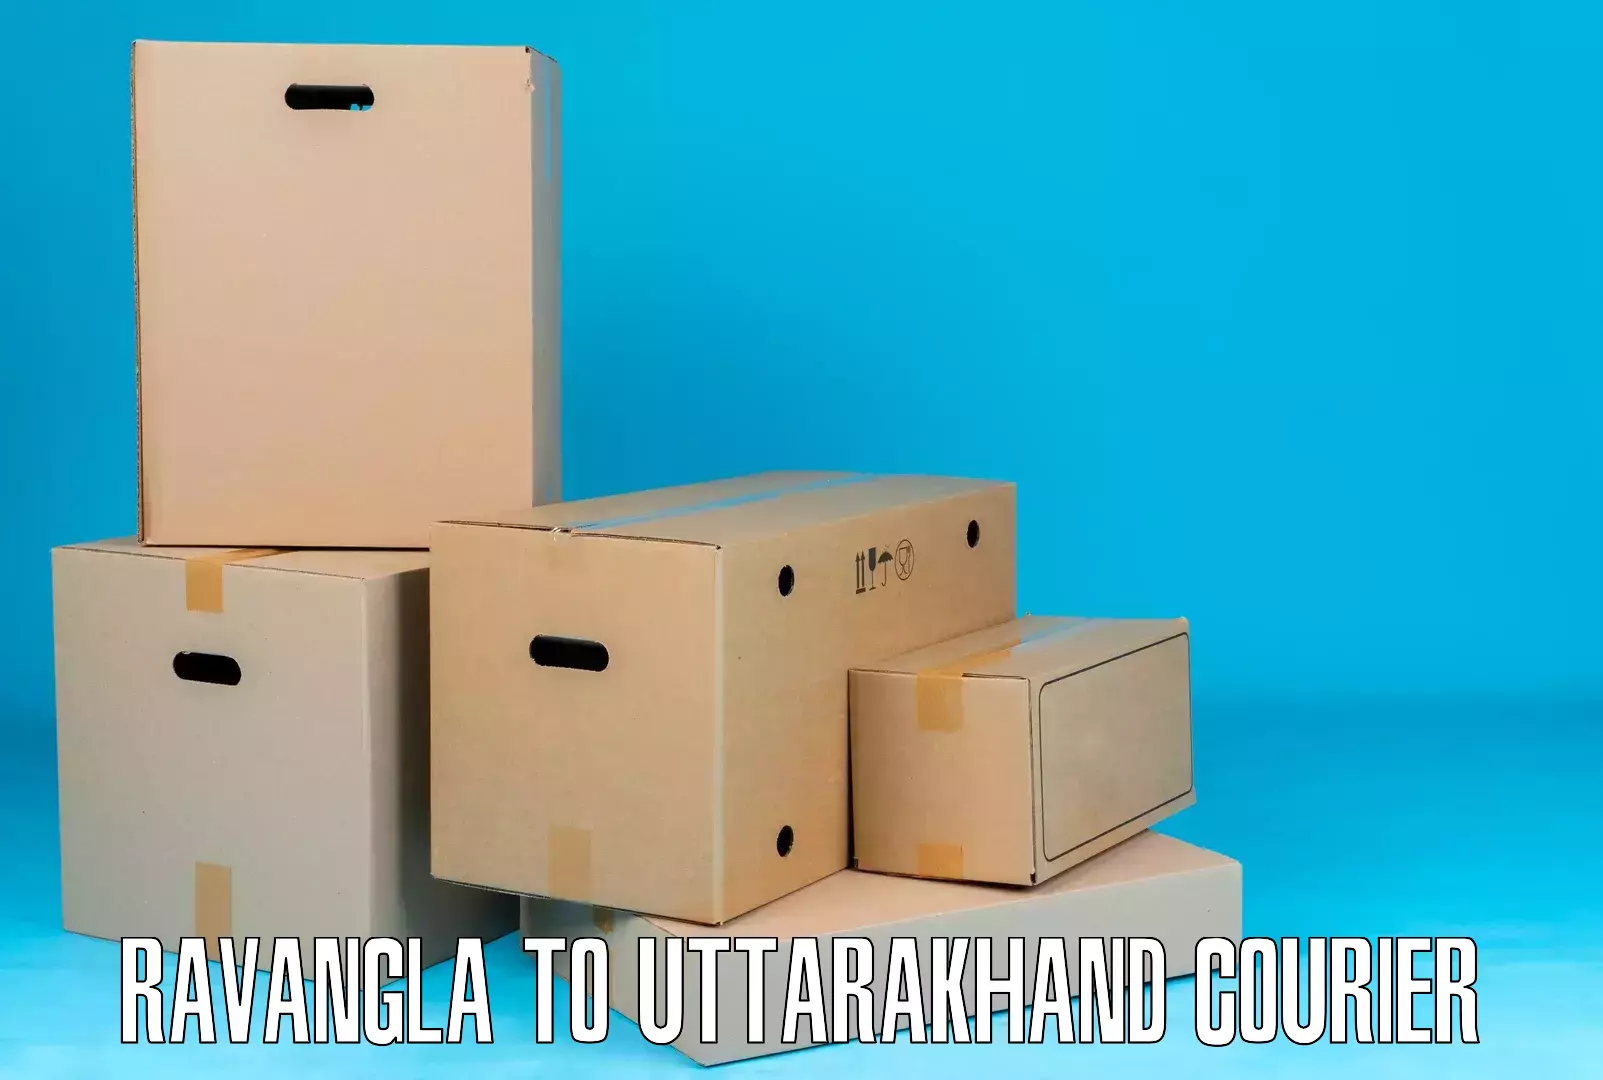 Multi-national courier services Ravangla to Uttarakhand